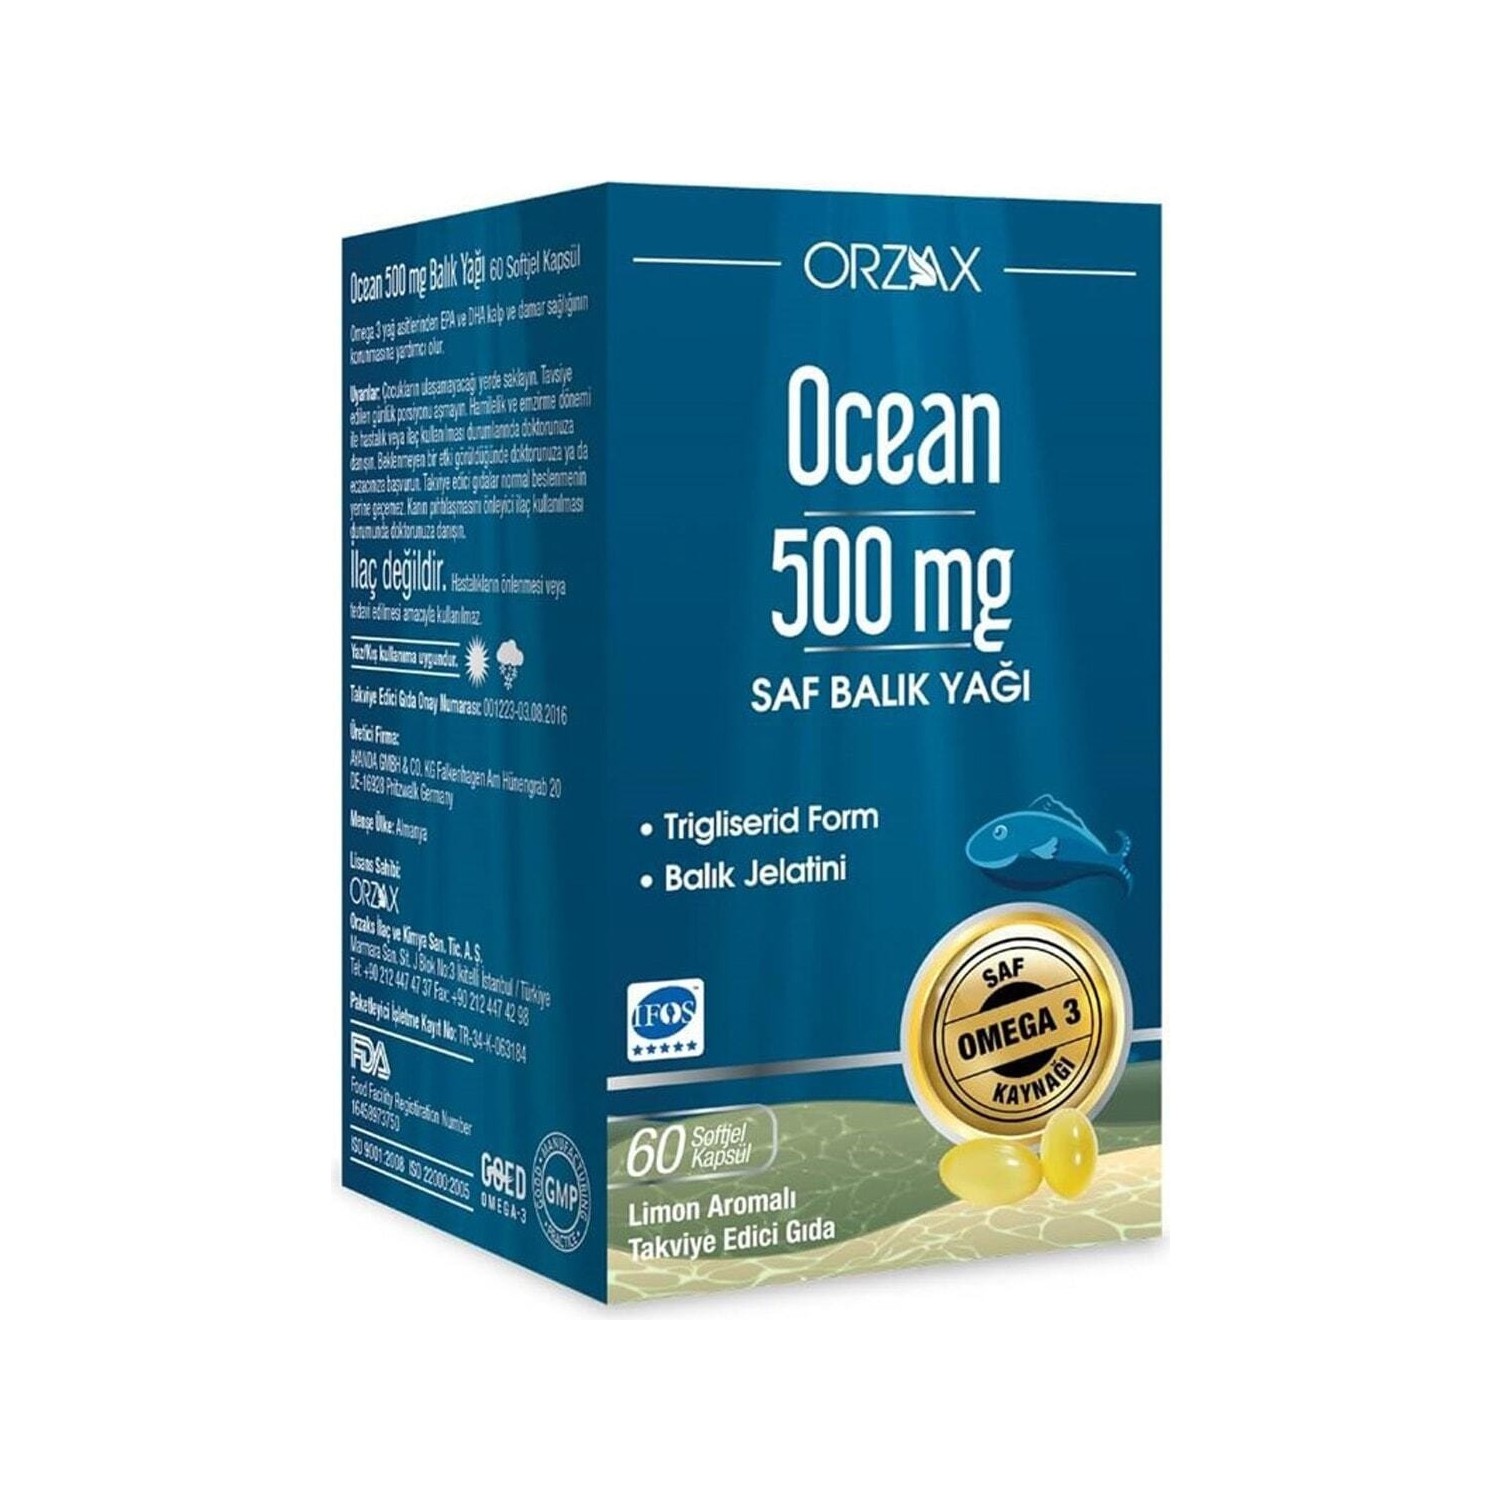 Рыбий жир Ocean 500 мг, 60 капсул рыбий жир ocean 500 мг 3 упаковки по 60 капсул